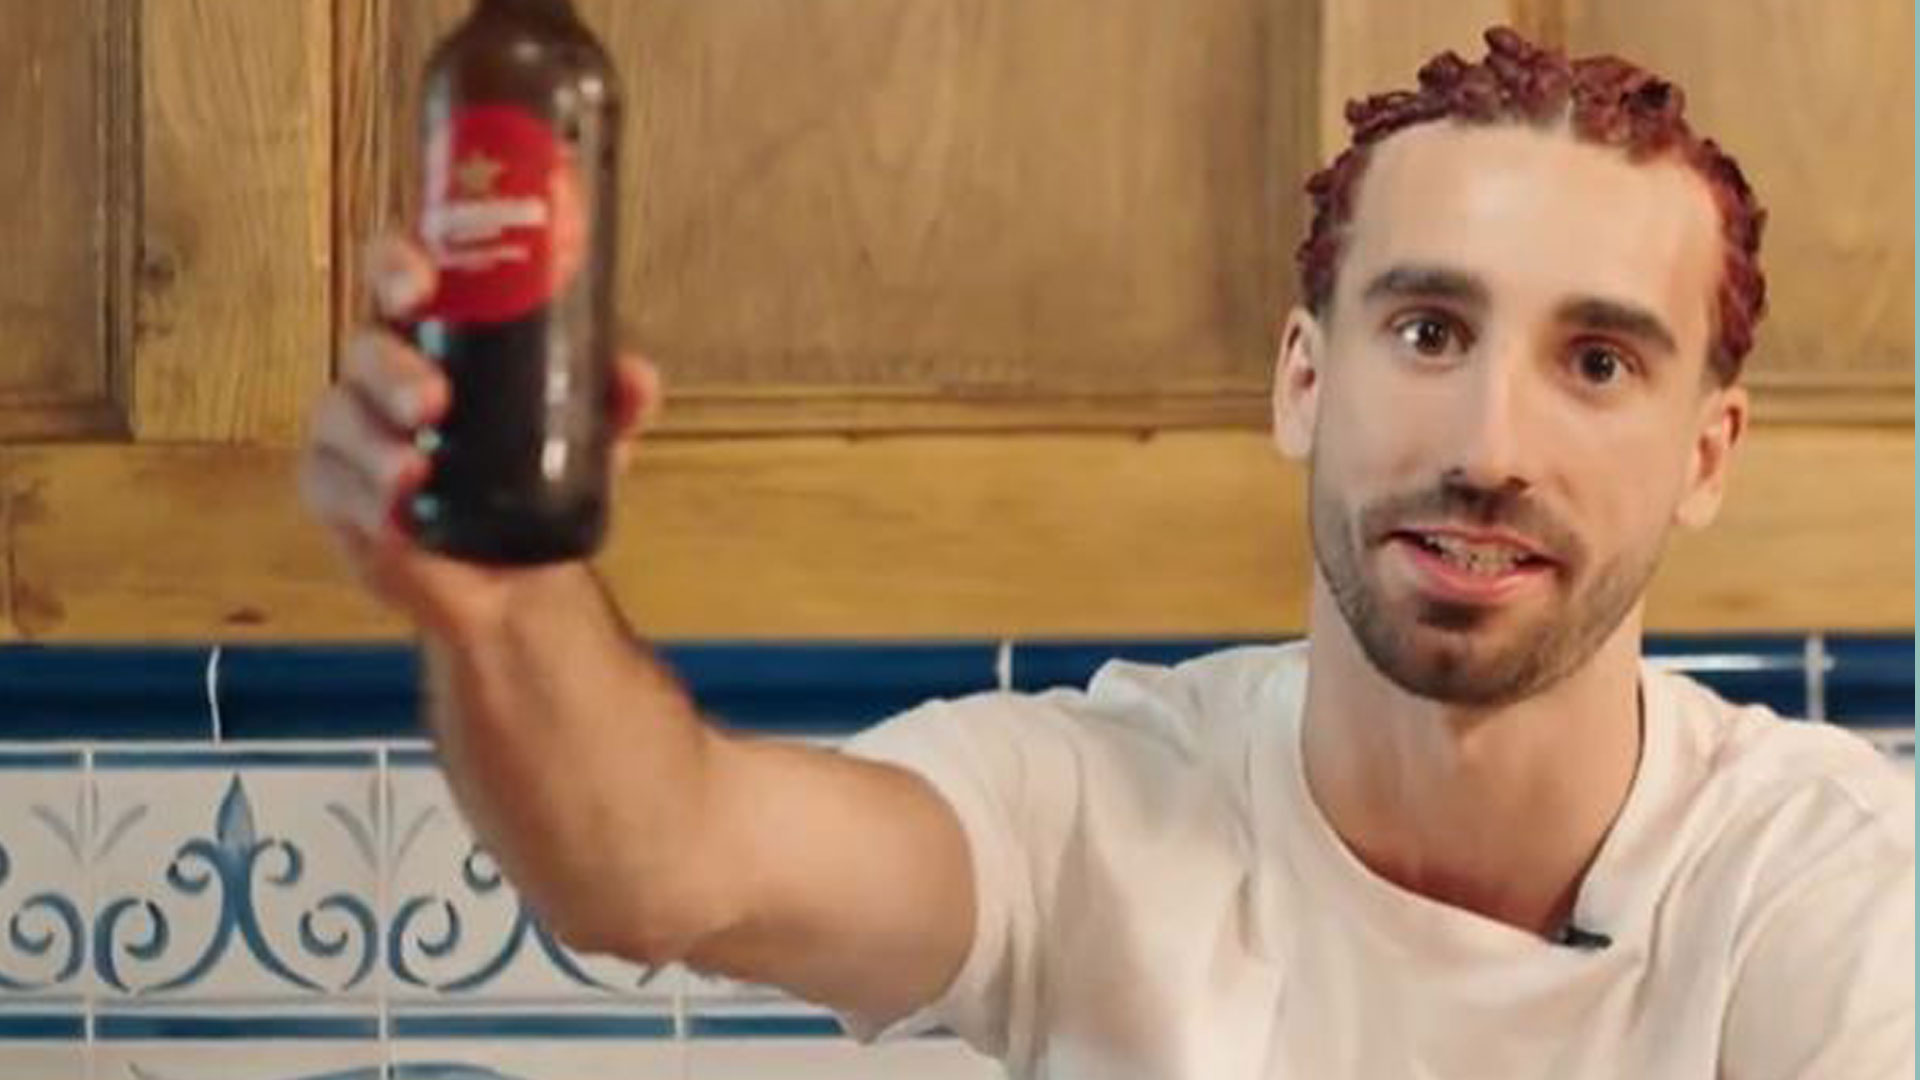 Marc Cucurella chante sa propre chanson dans une publicité après une vidéo virale post-Euro, mais les fans peu impressionnés disent « J’ai physiquement grimacé »